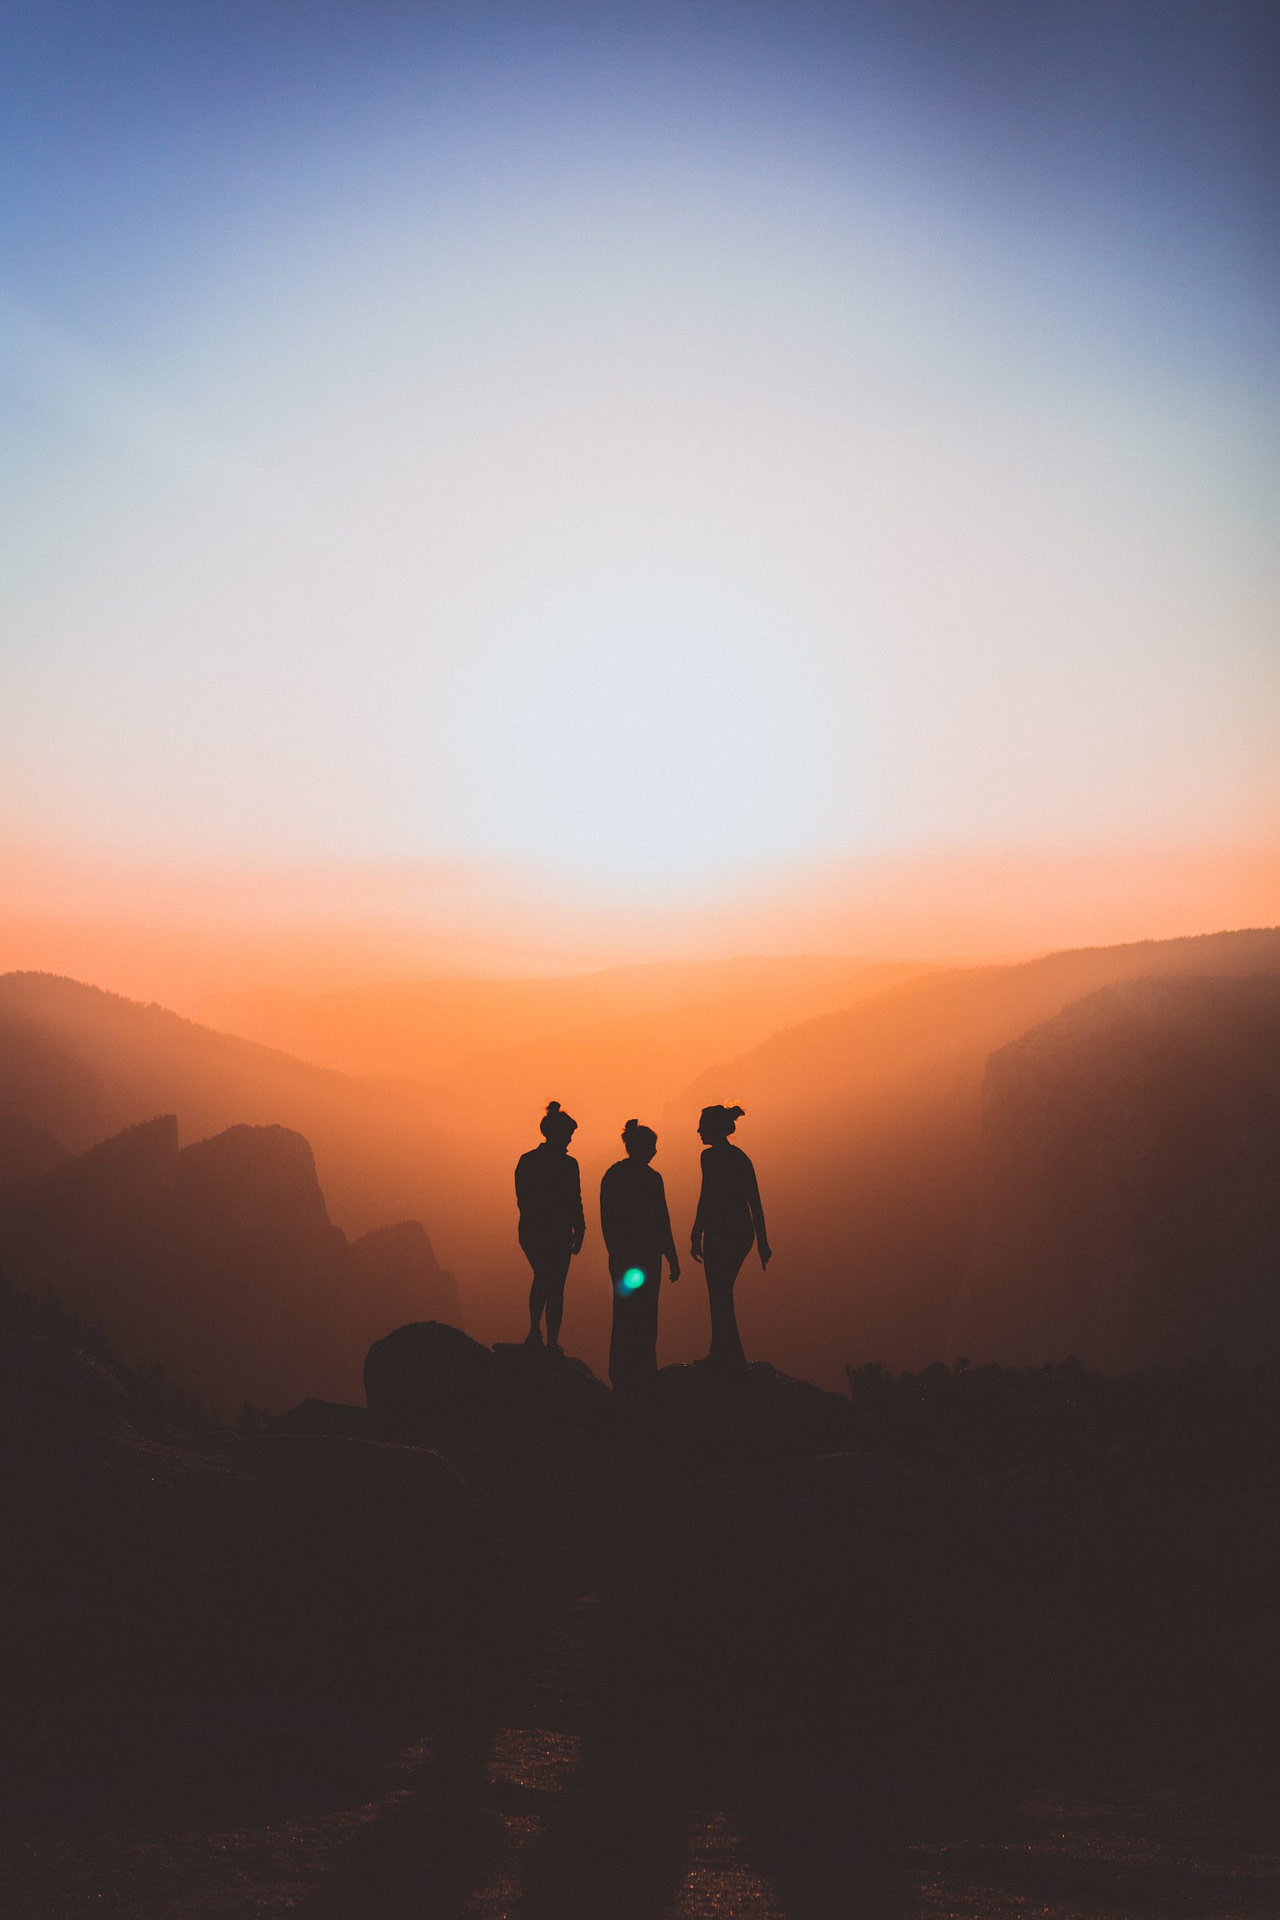 Three women at the mountain summit at sunset